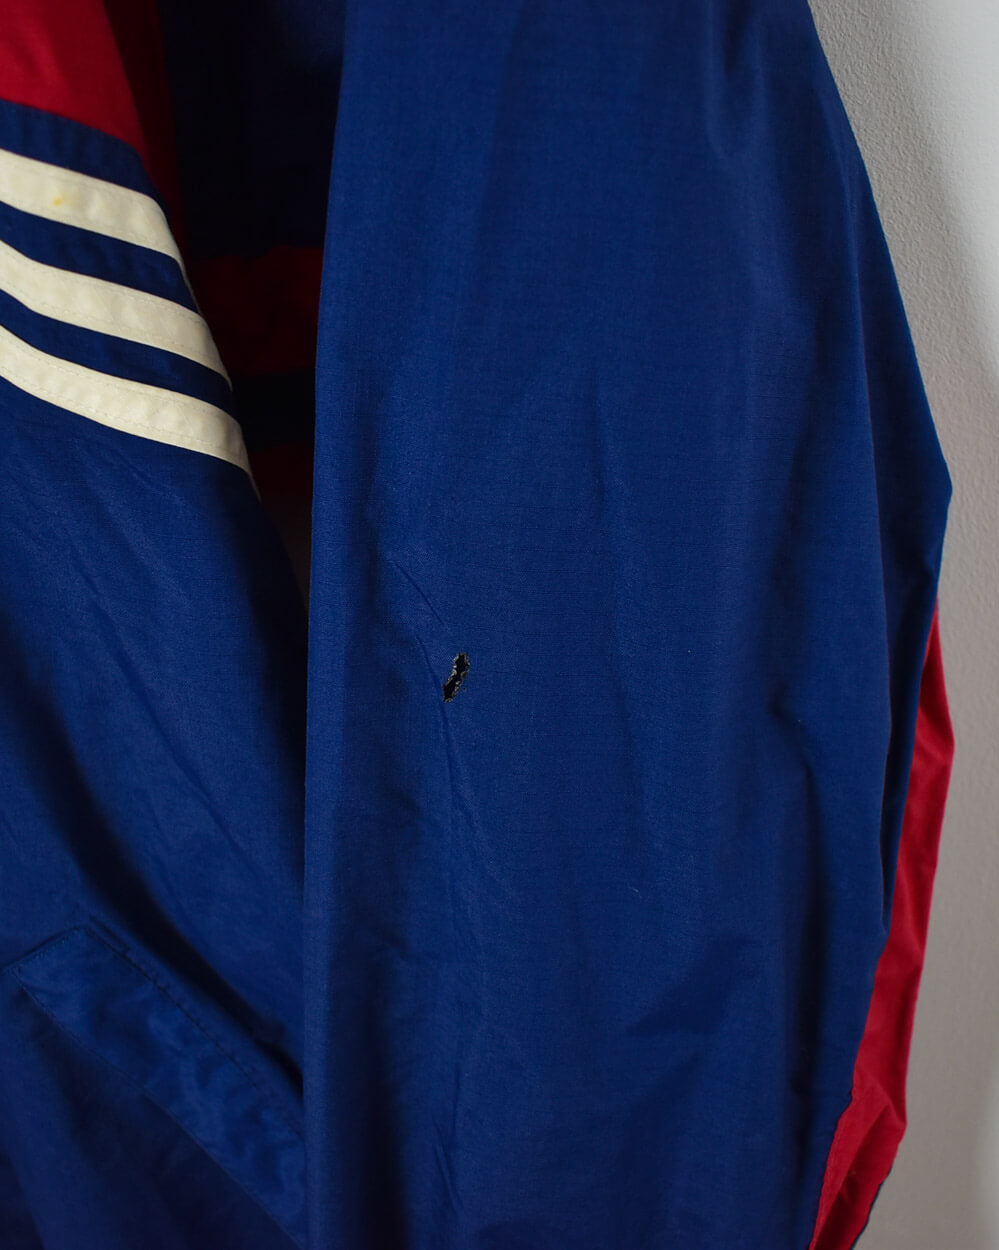 Adidas Bayern Munich Jacket - XX-Large - Domno Vintage